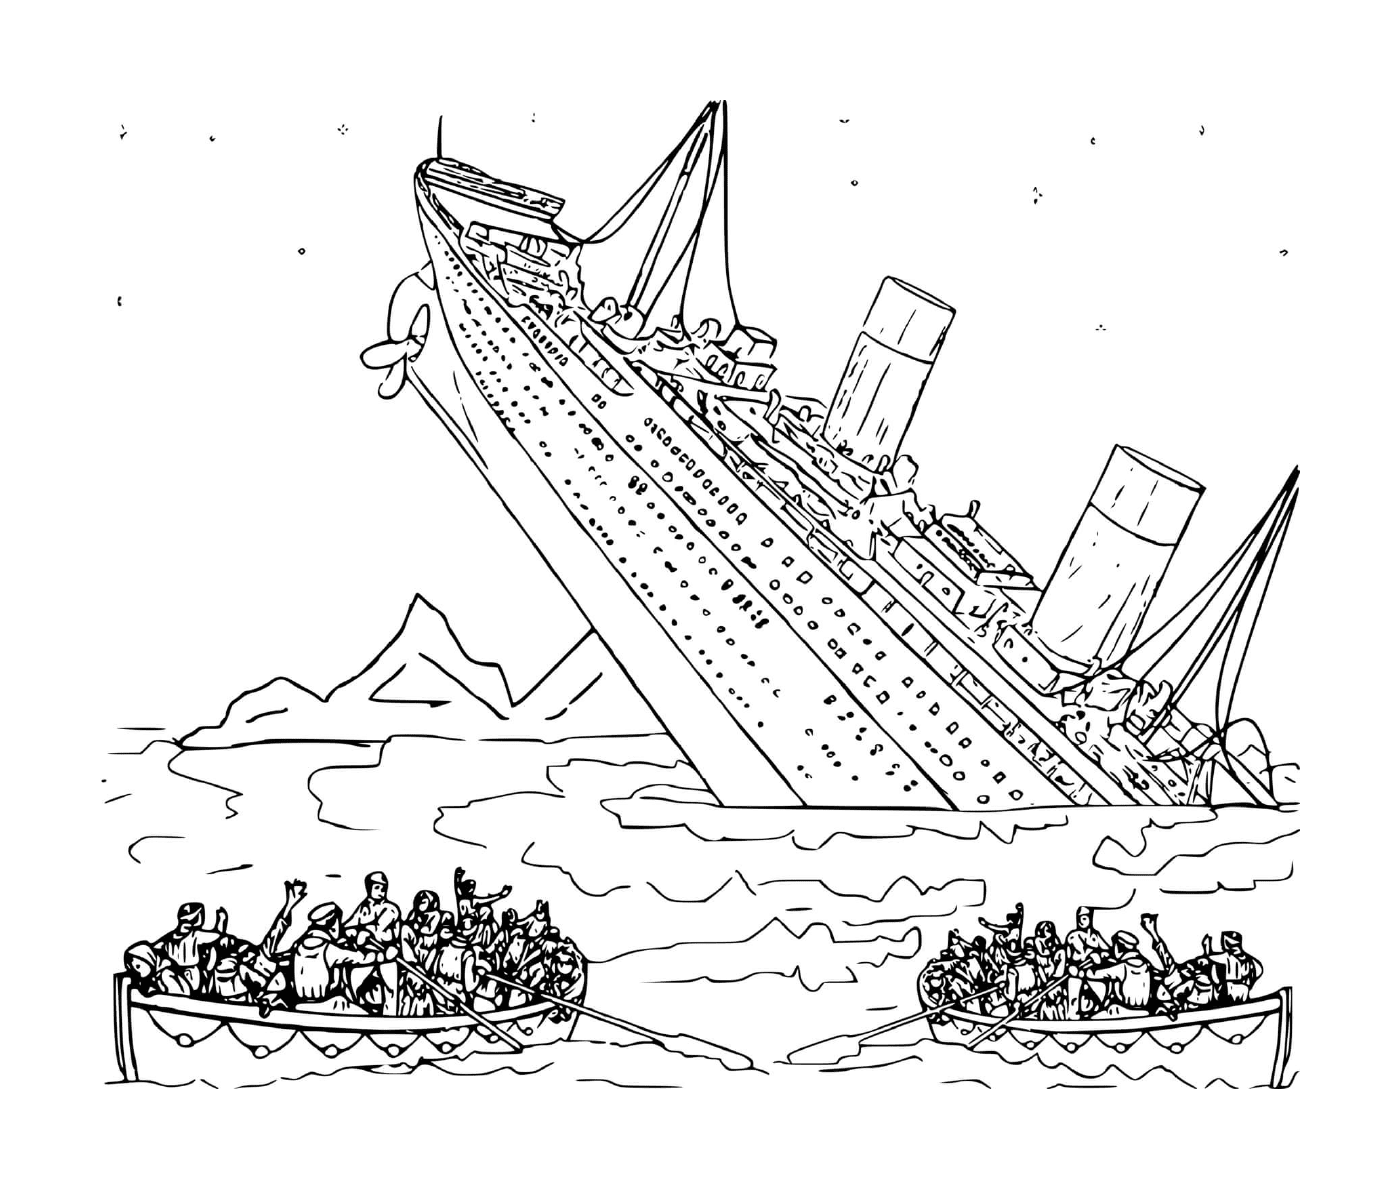  Лодка в воде с людьми на борту 